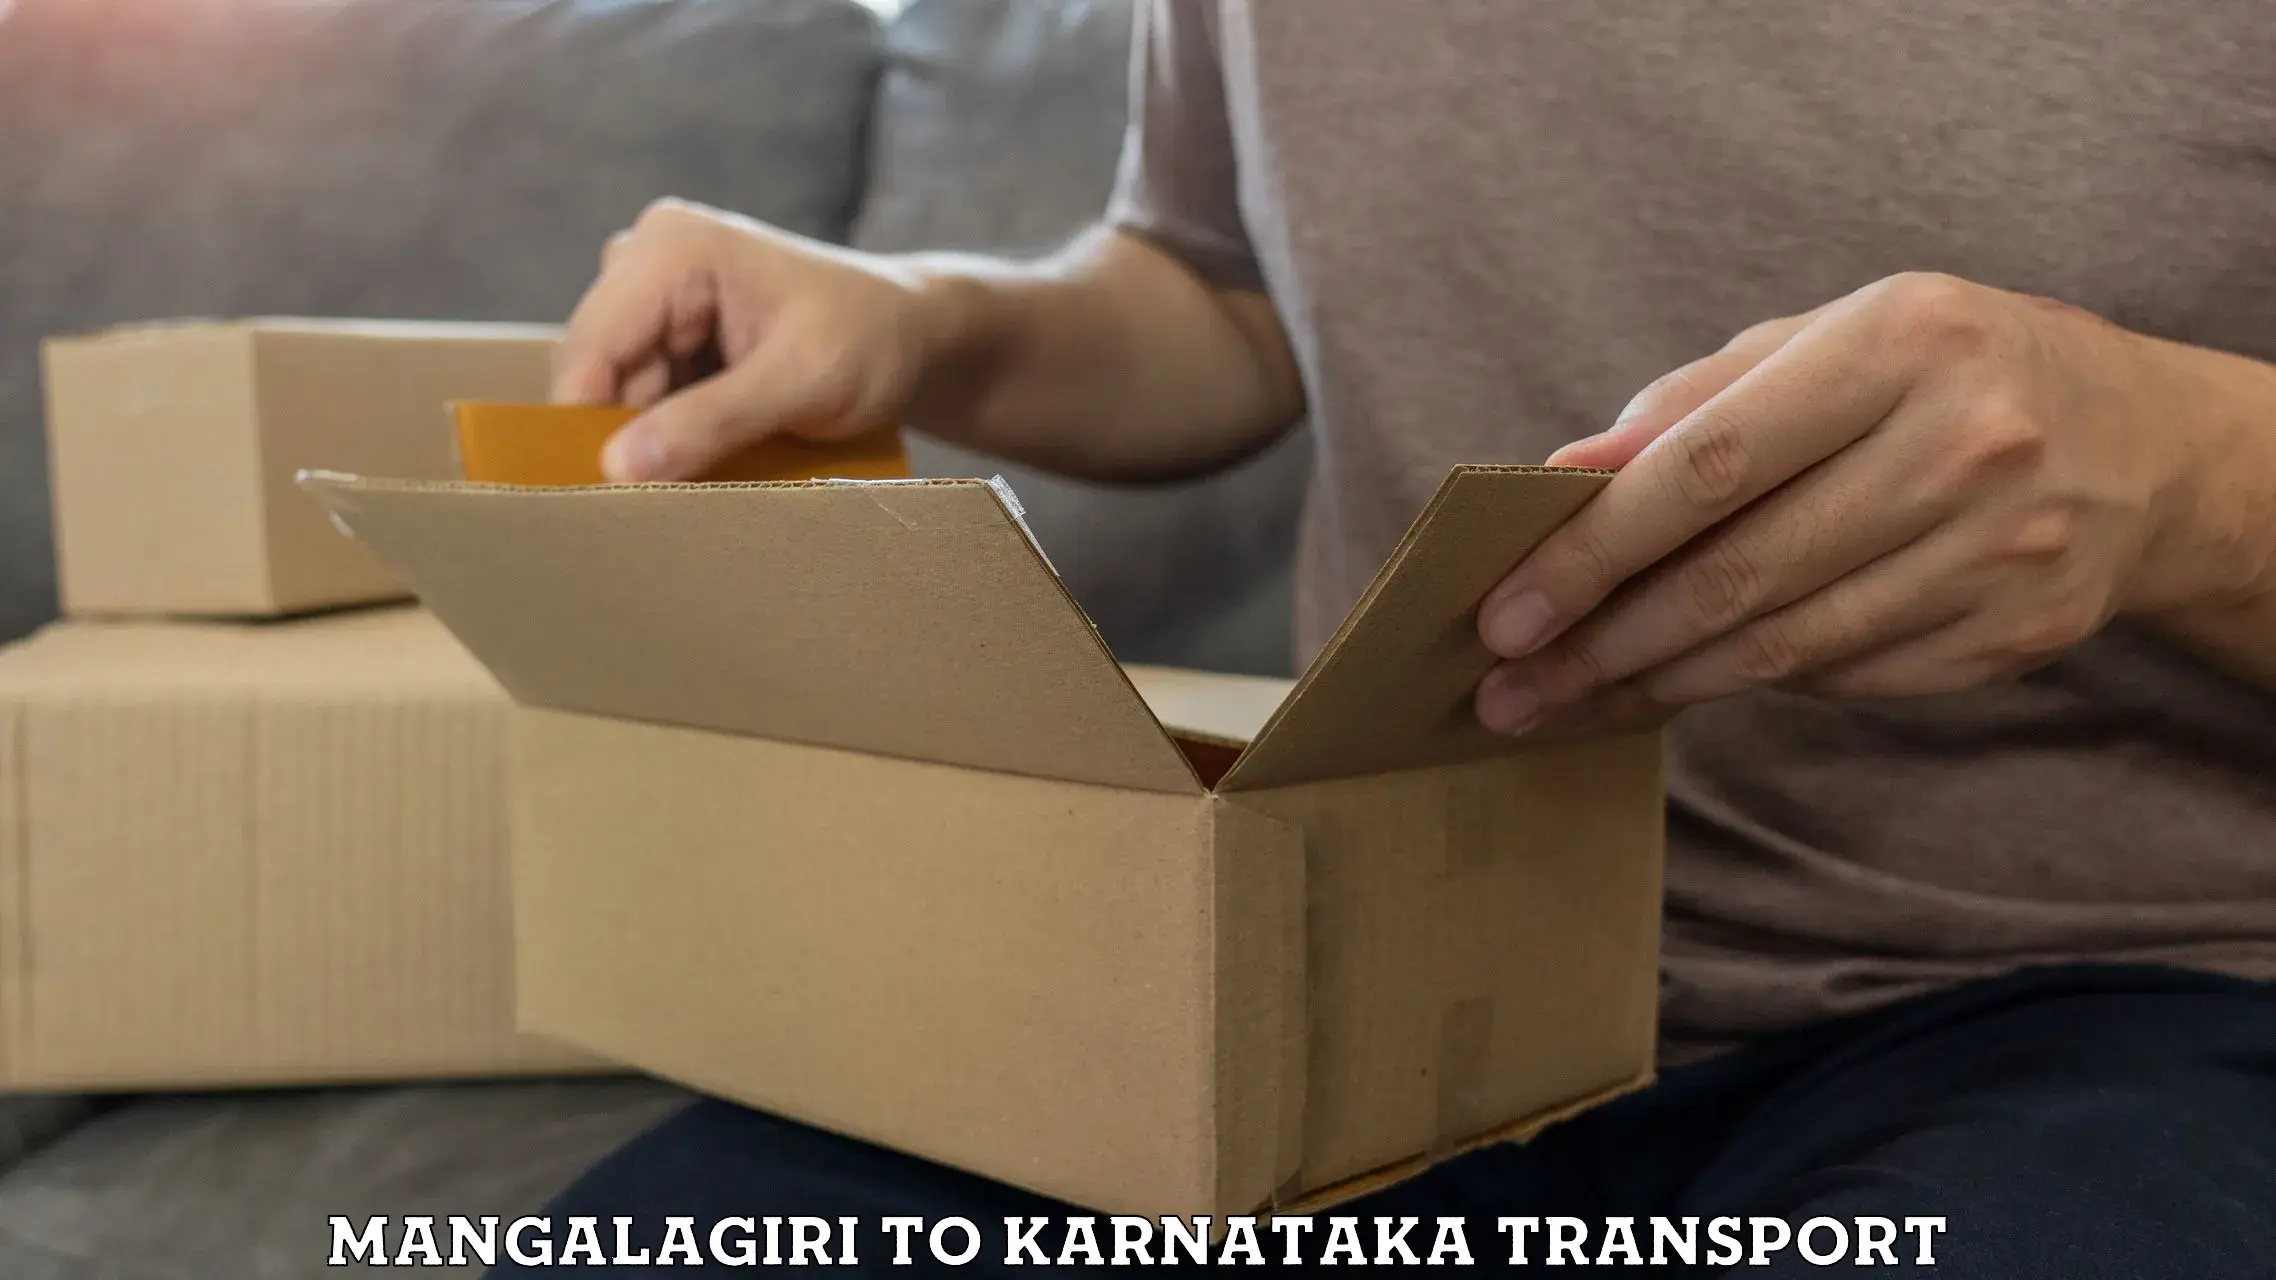 Domestic transport services Mangalagiri to Kanjarakatte